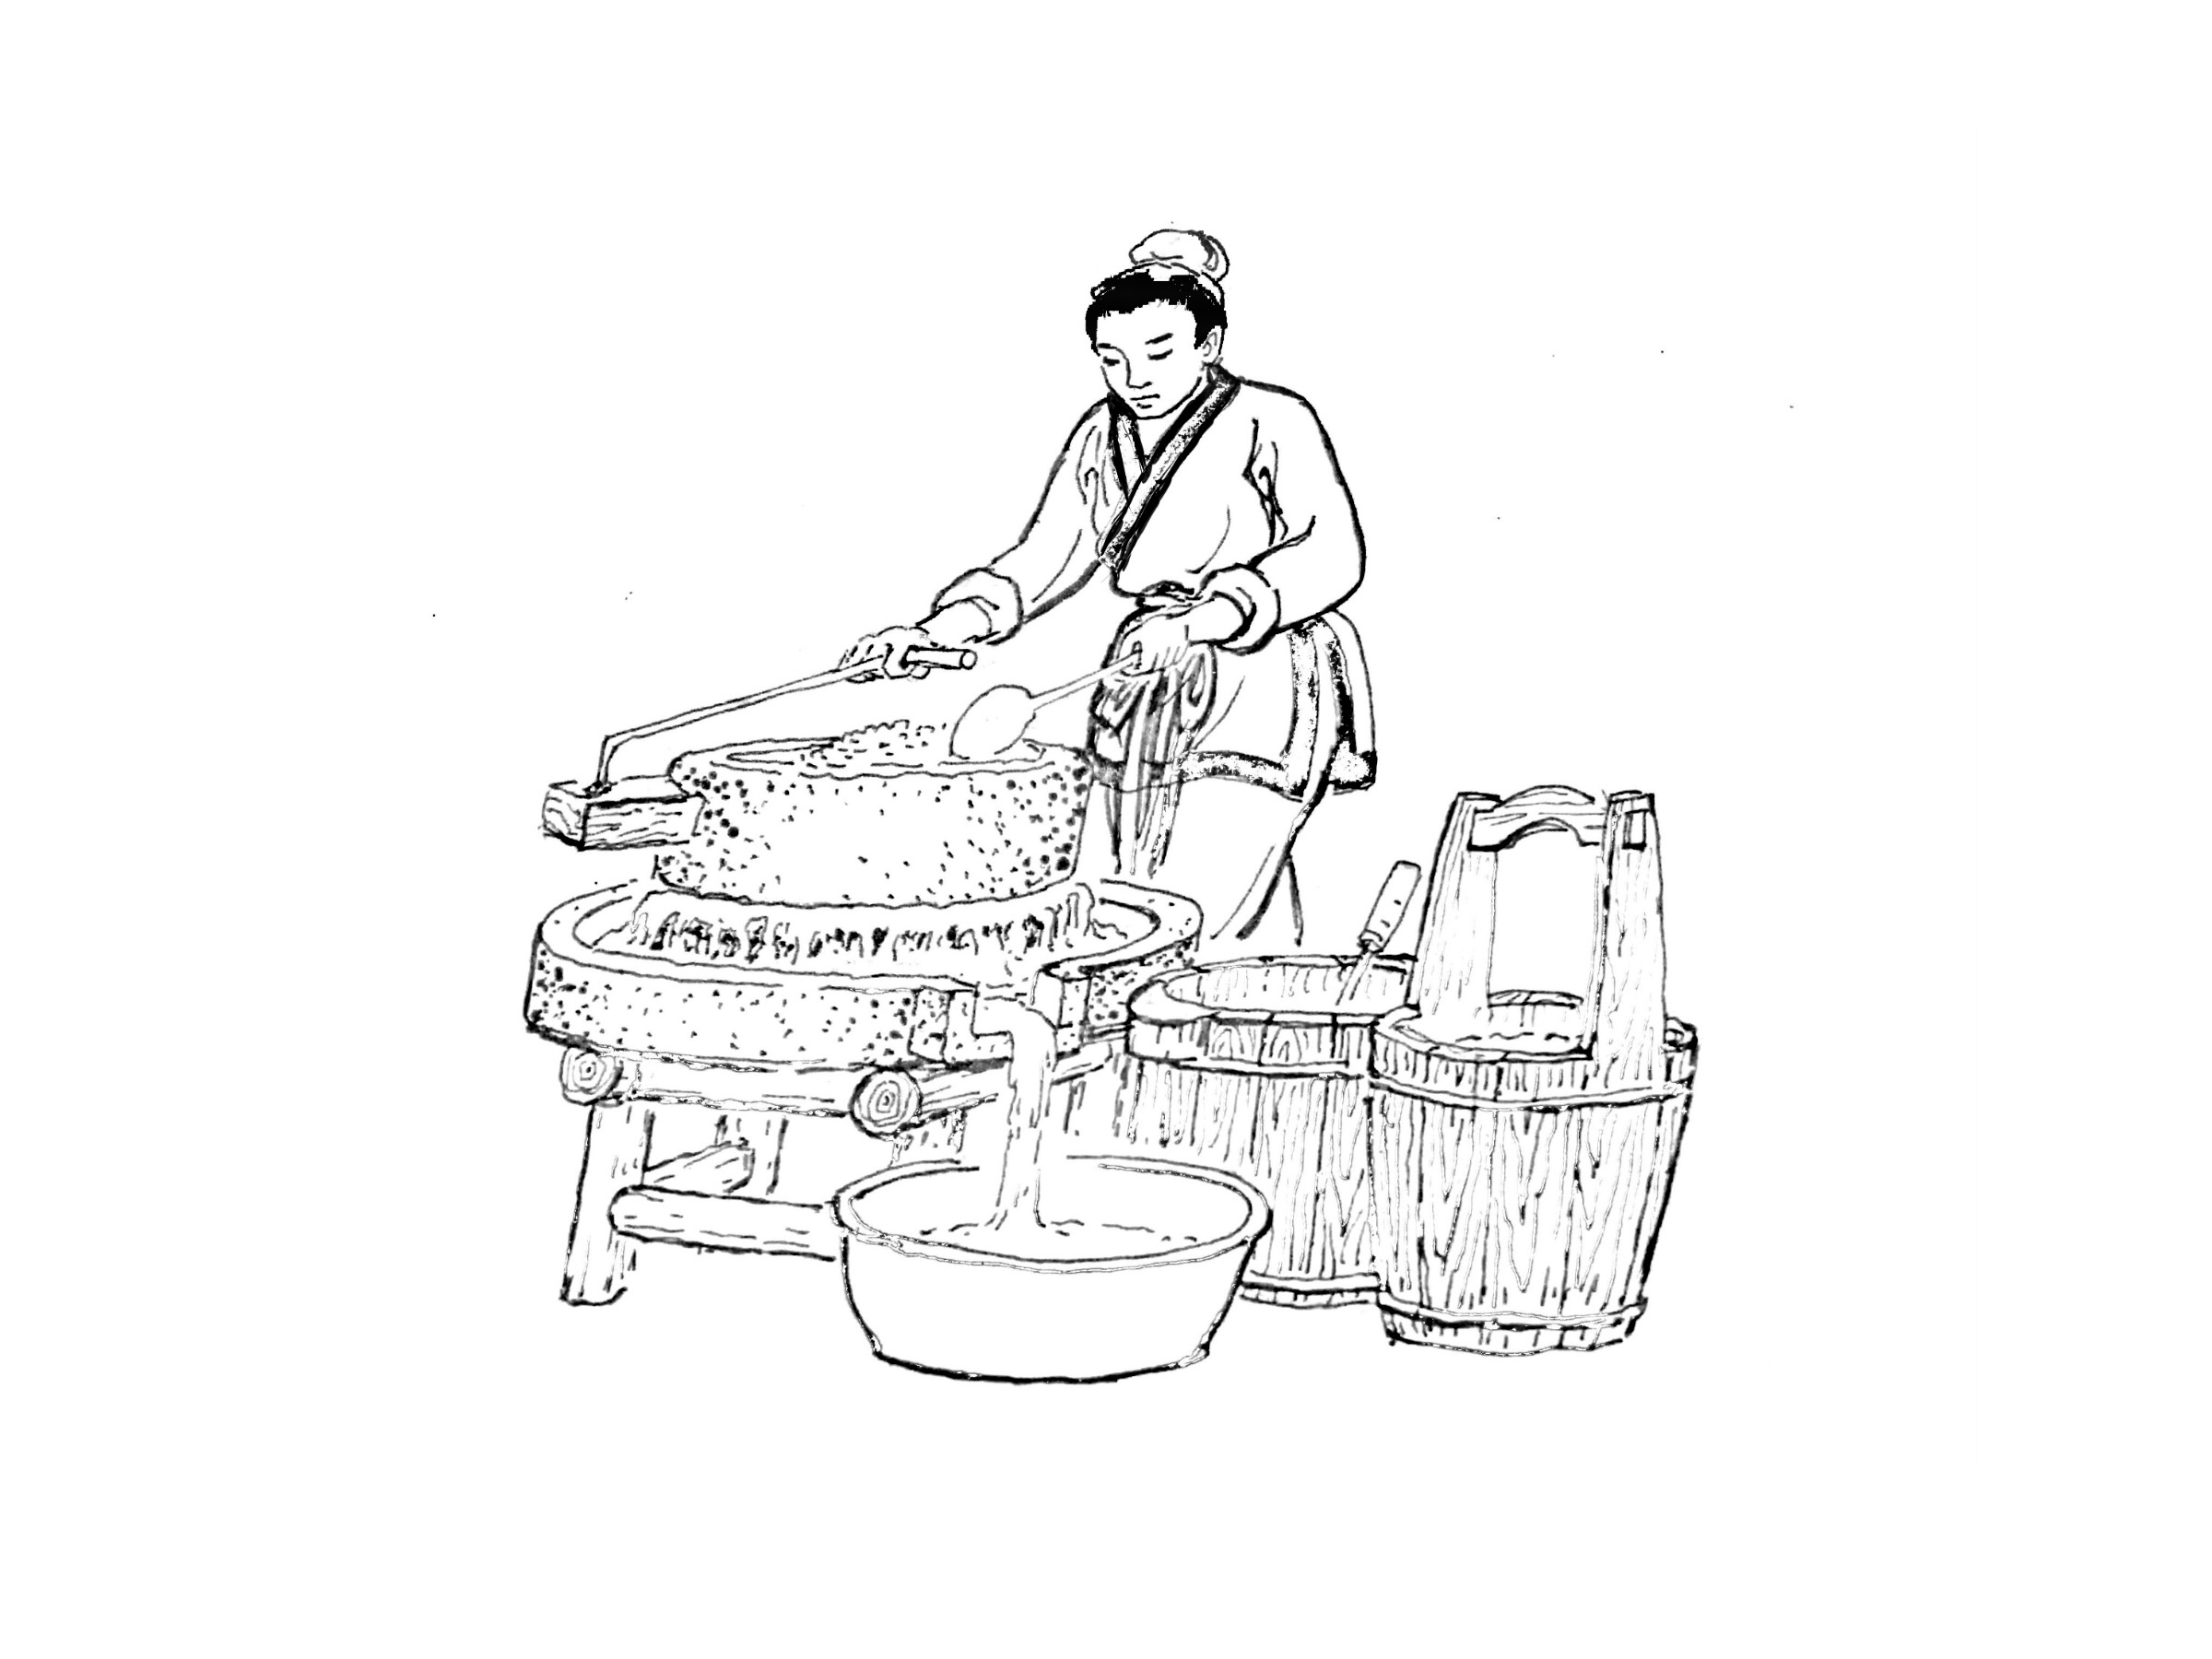 竹篙粉制作工序将浸好的米放进磨粉机磨成米浆,磨得越细,粉越滑.